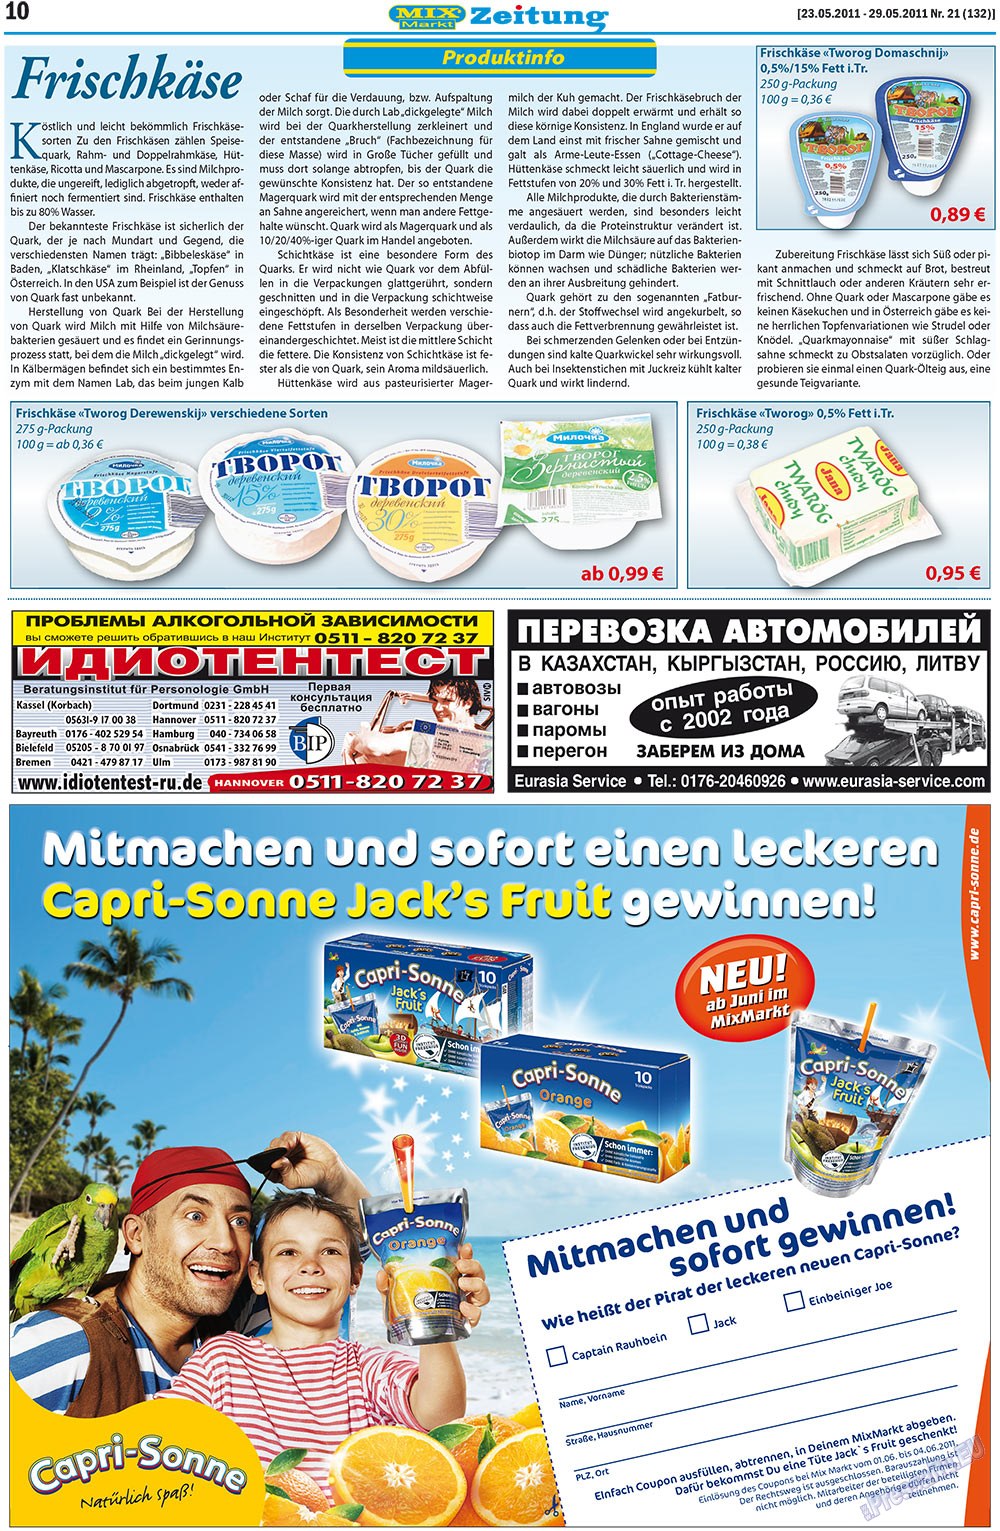 MIX-Markt Zeitung (Zeitung). 2011 Jahr, Ausgabe 21, Seite 10